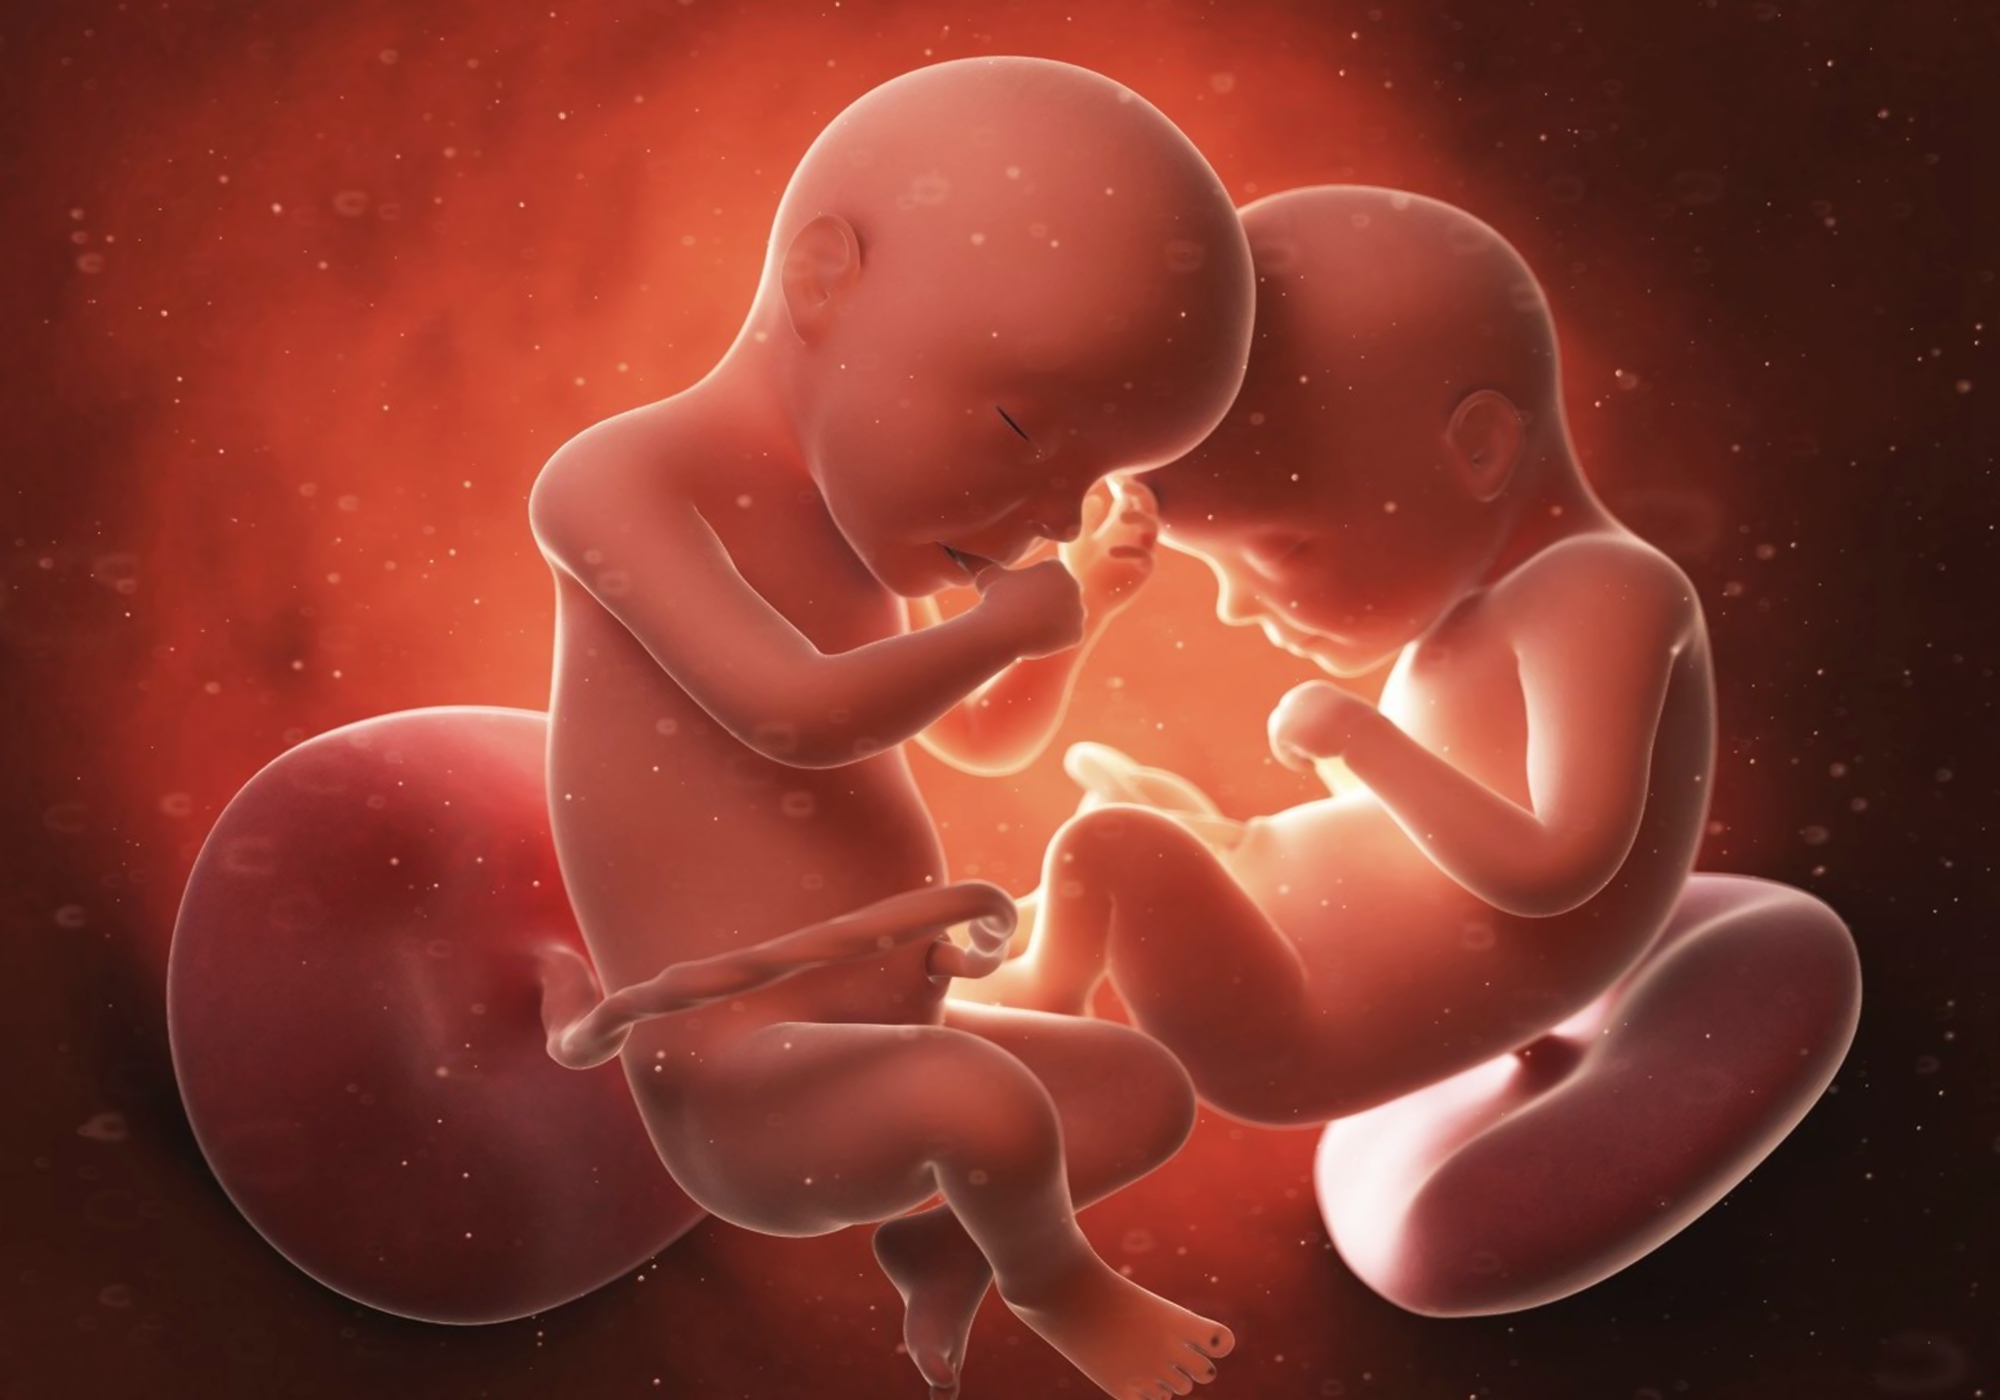 胚胎发育至分娩需要40周左右的时间